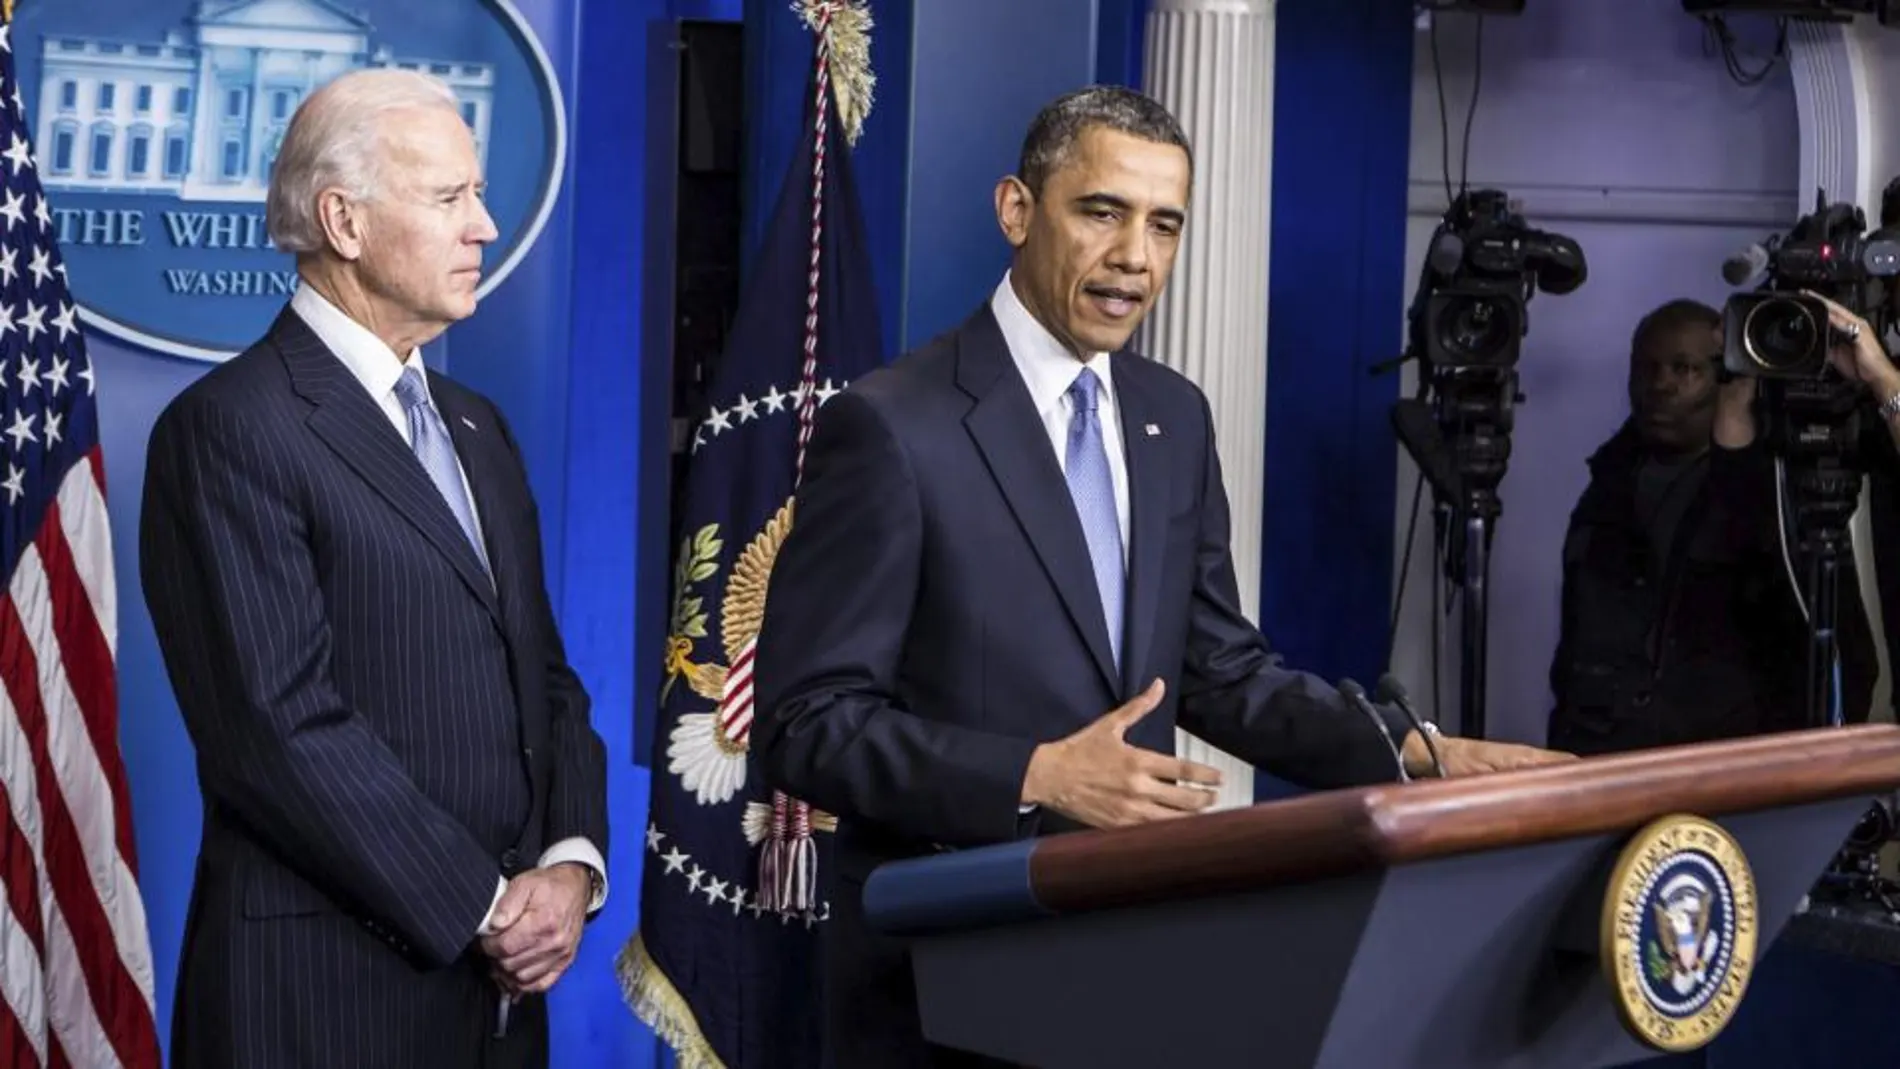 El presidente Obama explica las claves del acuerdo